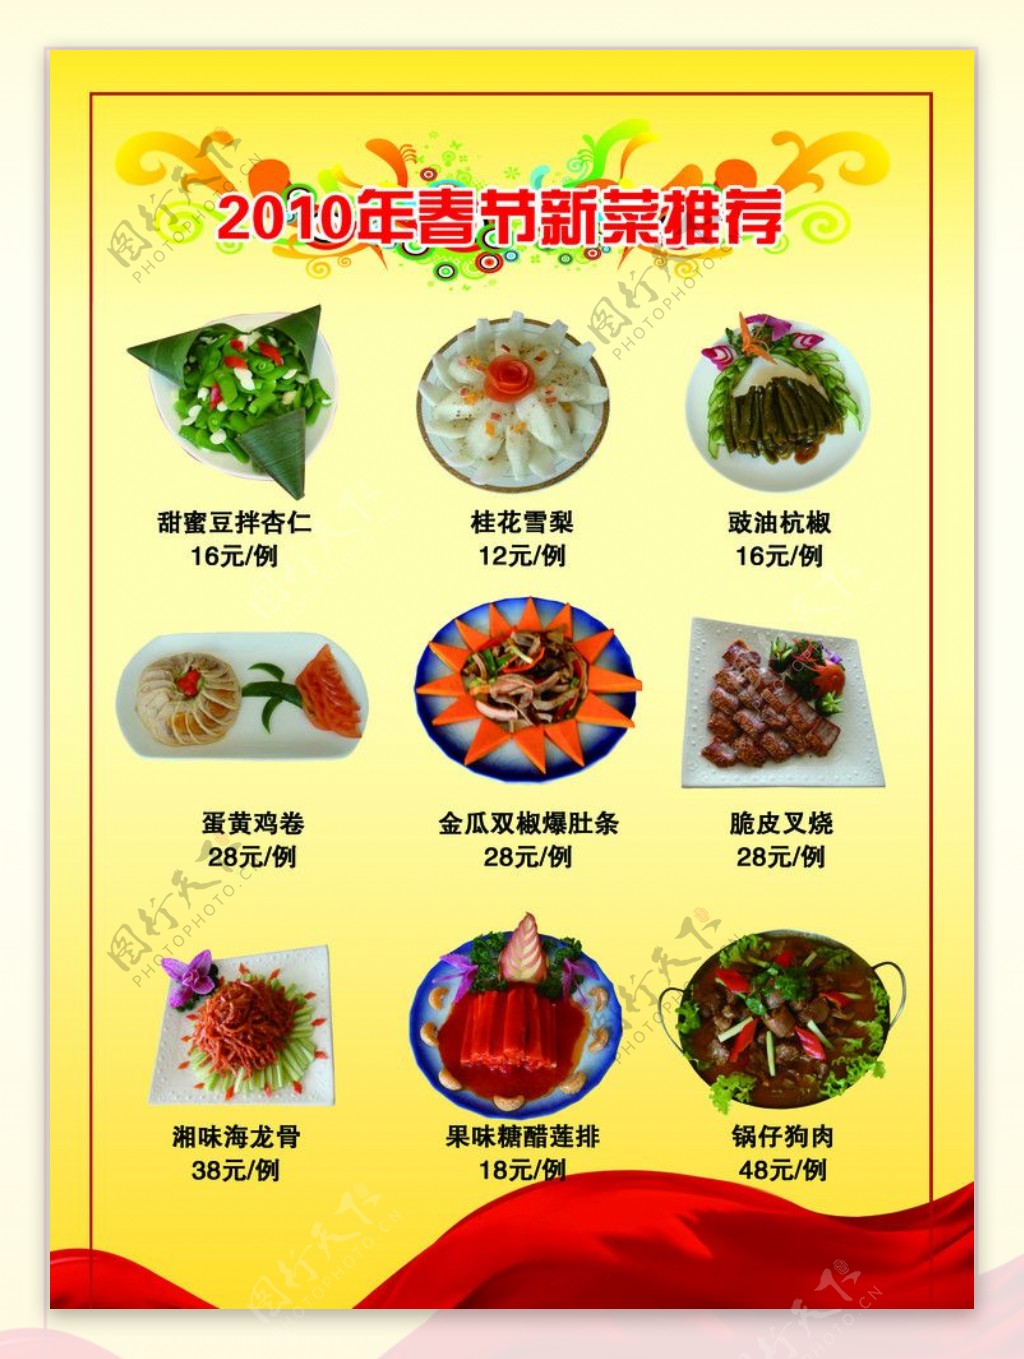 2010年春节新菜推荐图片